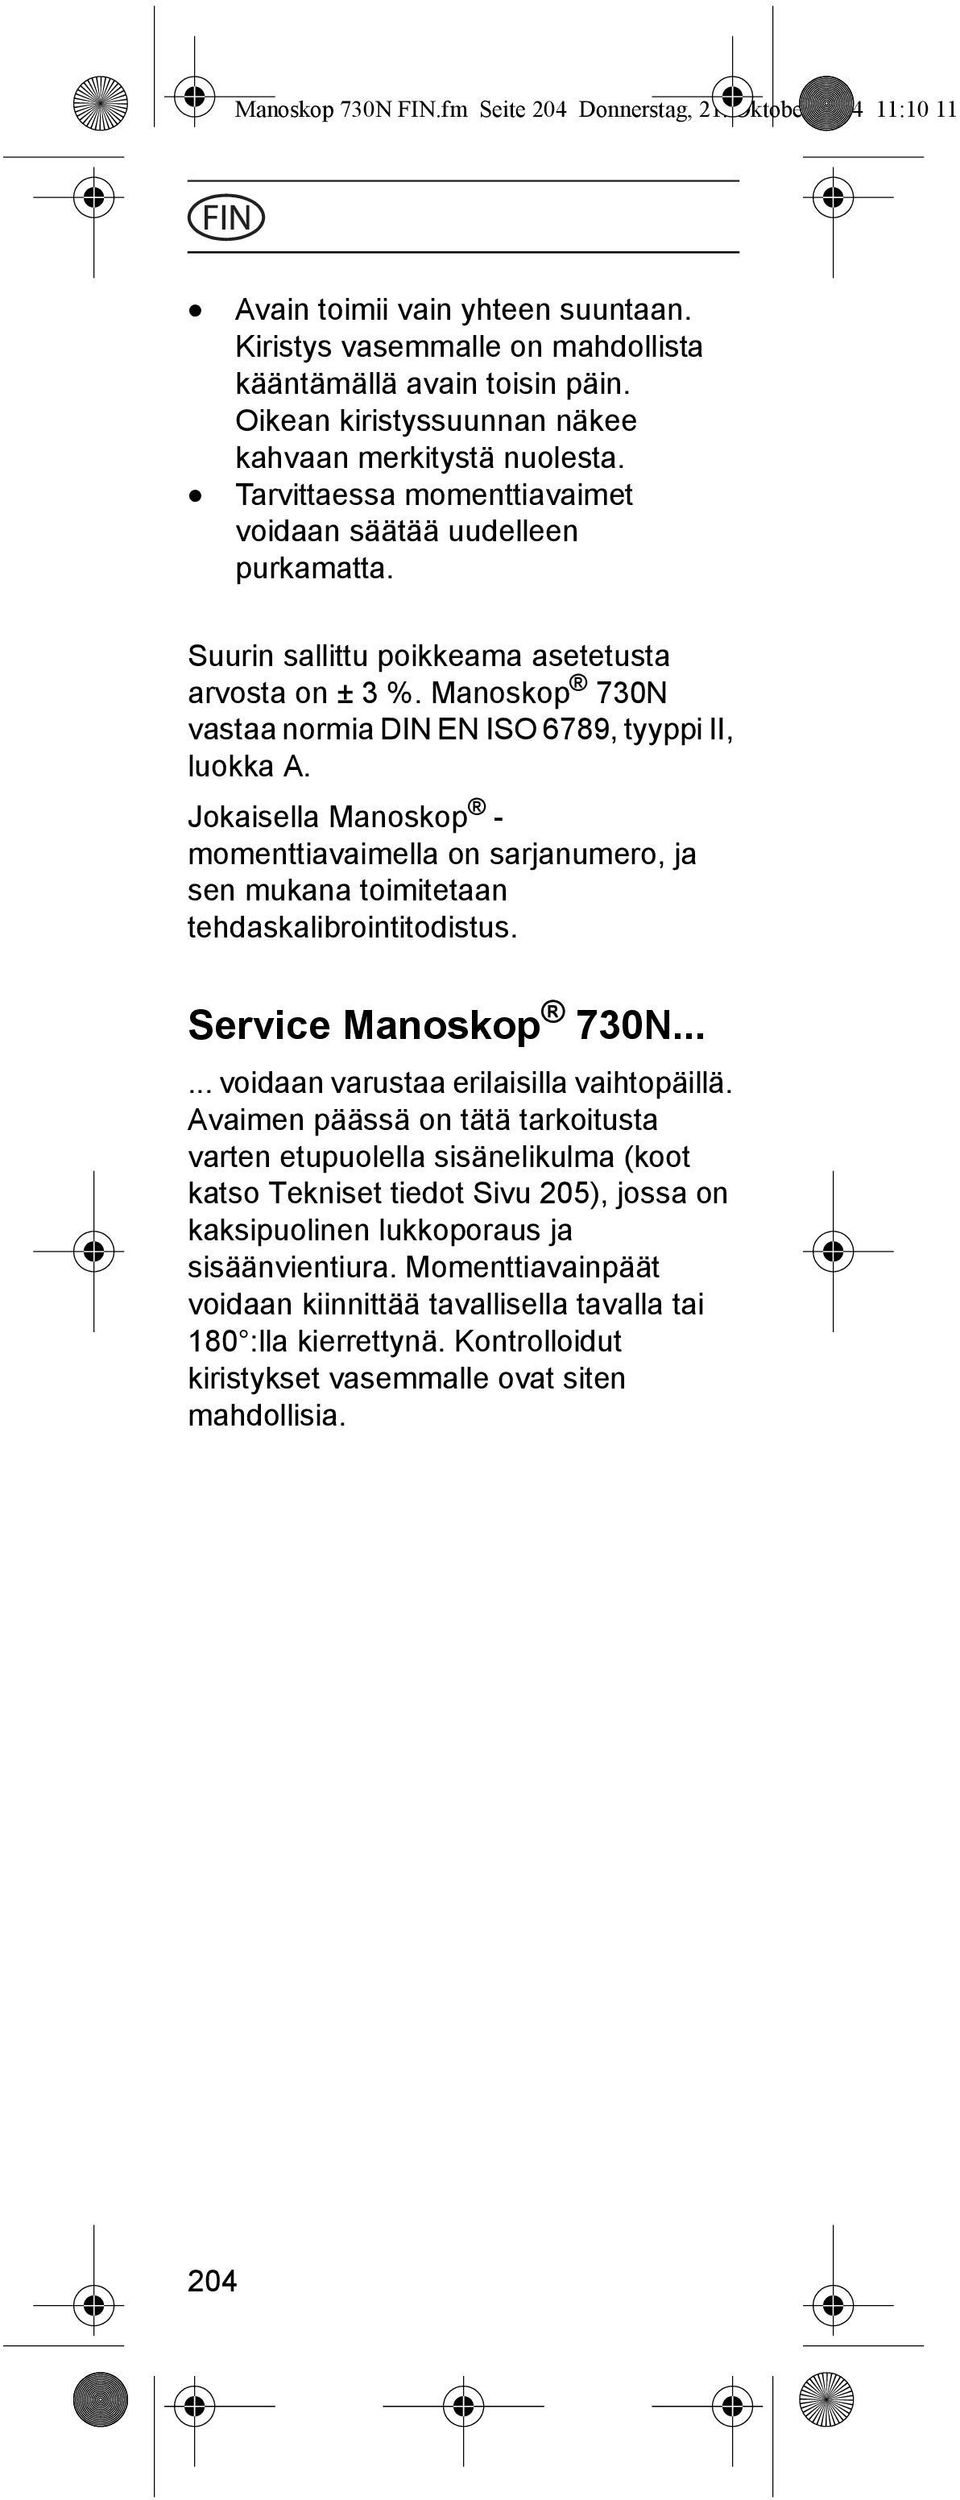 Manoskop 730N vastaa normia DIN EN ISO 6789, tyyppi II, luokka A. Jokaisella Manoskop - momenttiavaimella on sarjanumero, ja sen mukana toimitetaan tehdaskalibrointitodistus. Service Manoskop 730N.